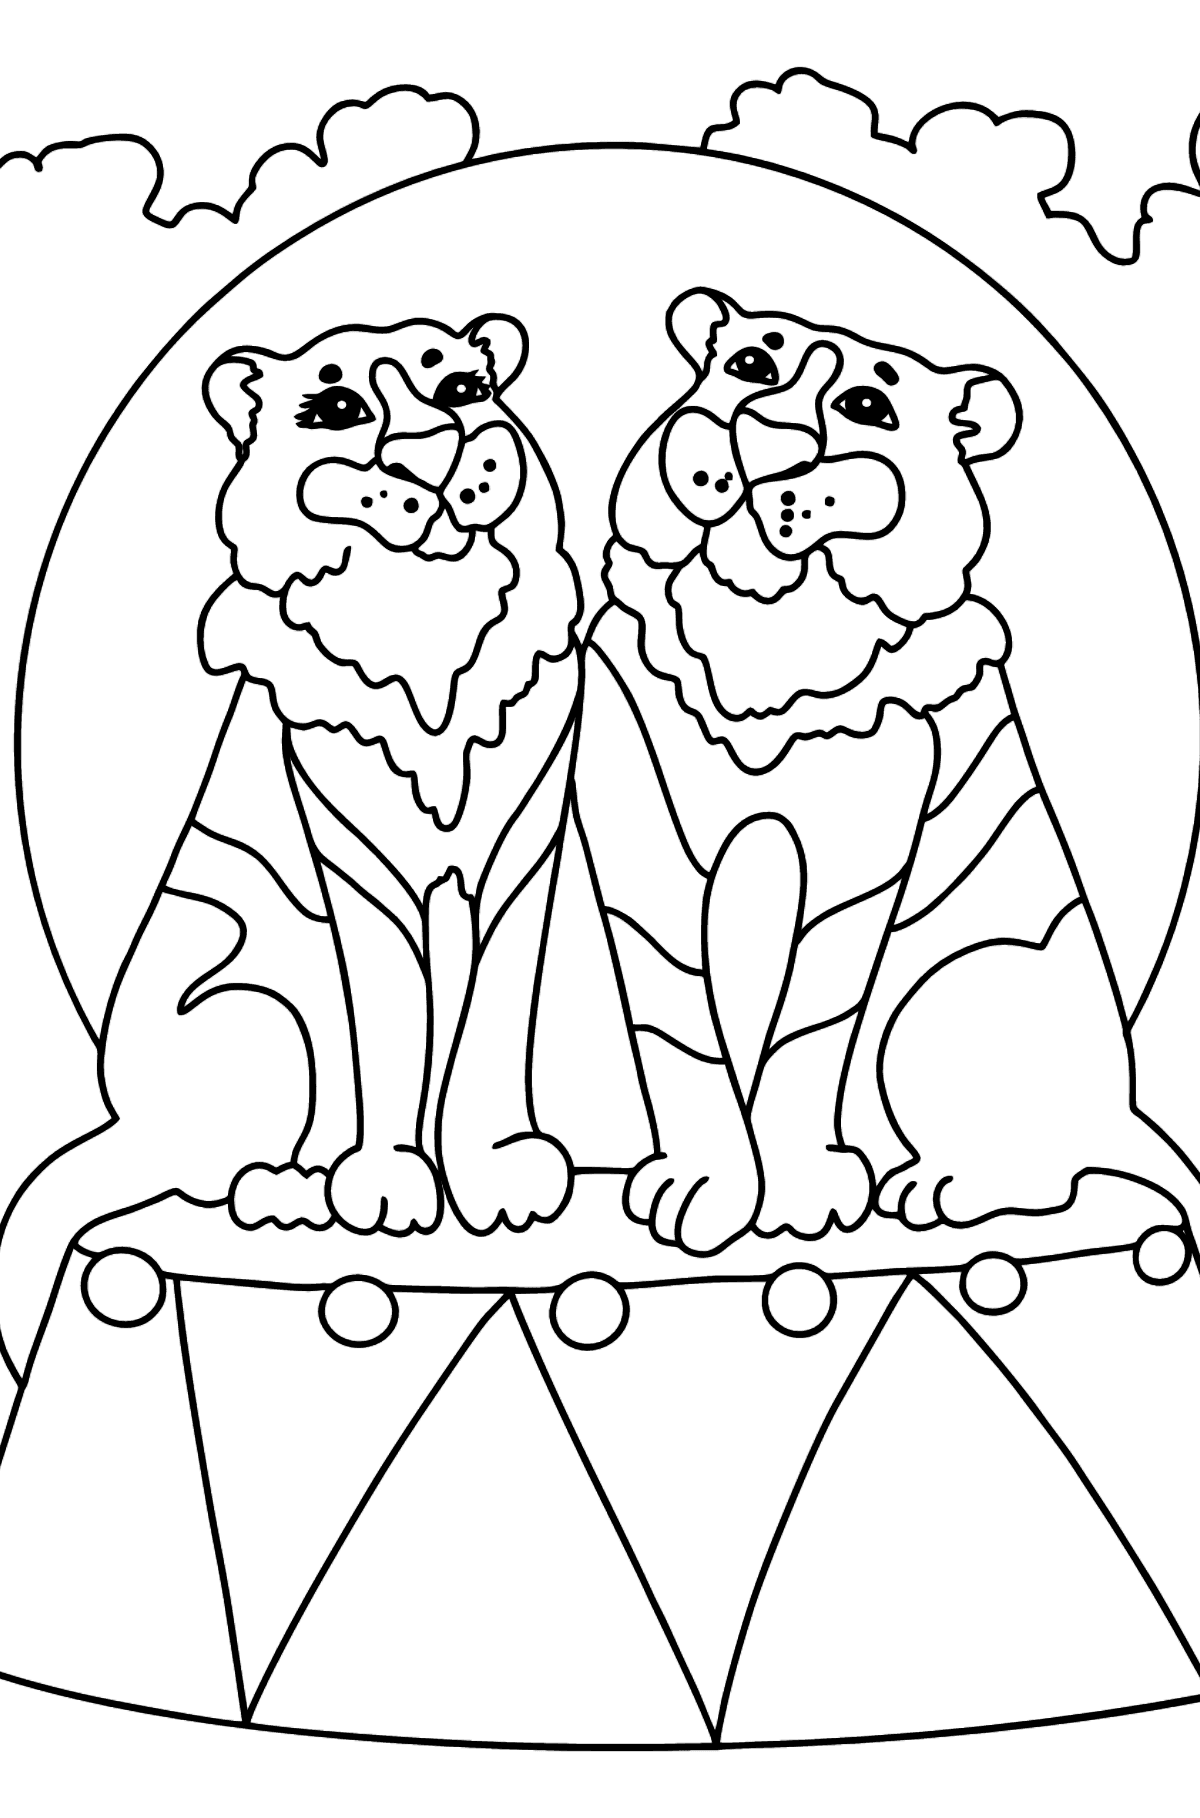 Desen de colorat tigri la circ (dificil) - Desene de colorat pentru copii